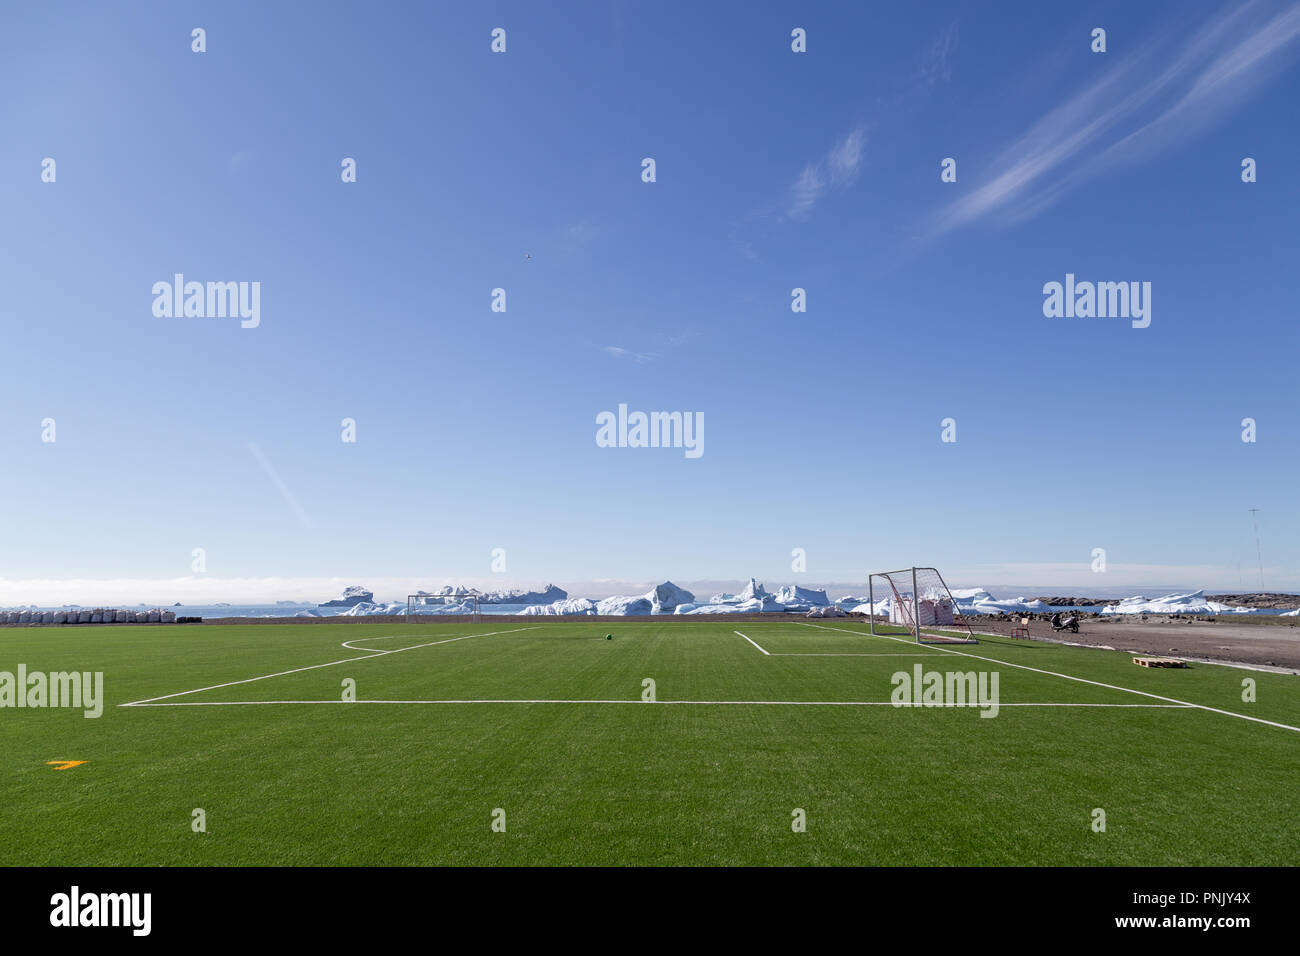 Soccer Field in Qeqertarsuaq, Greenland Stock Photo